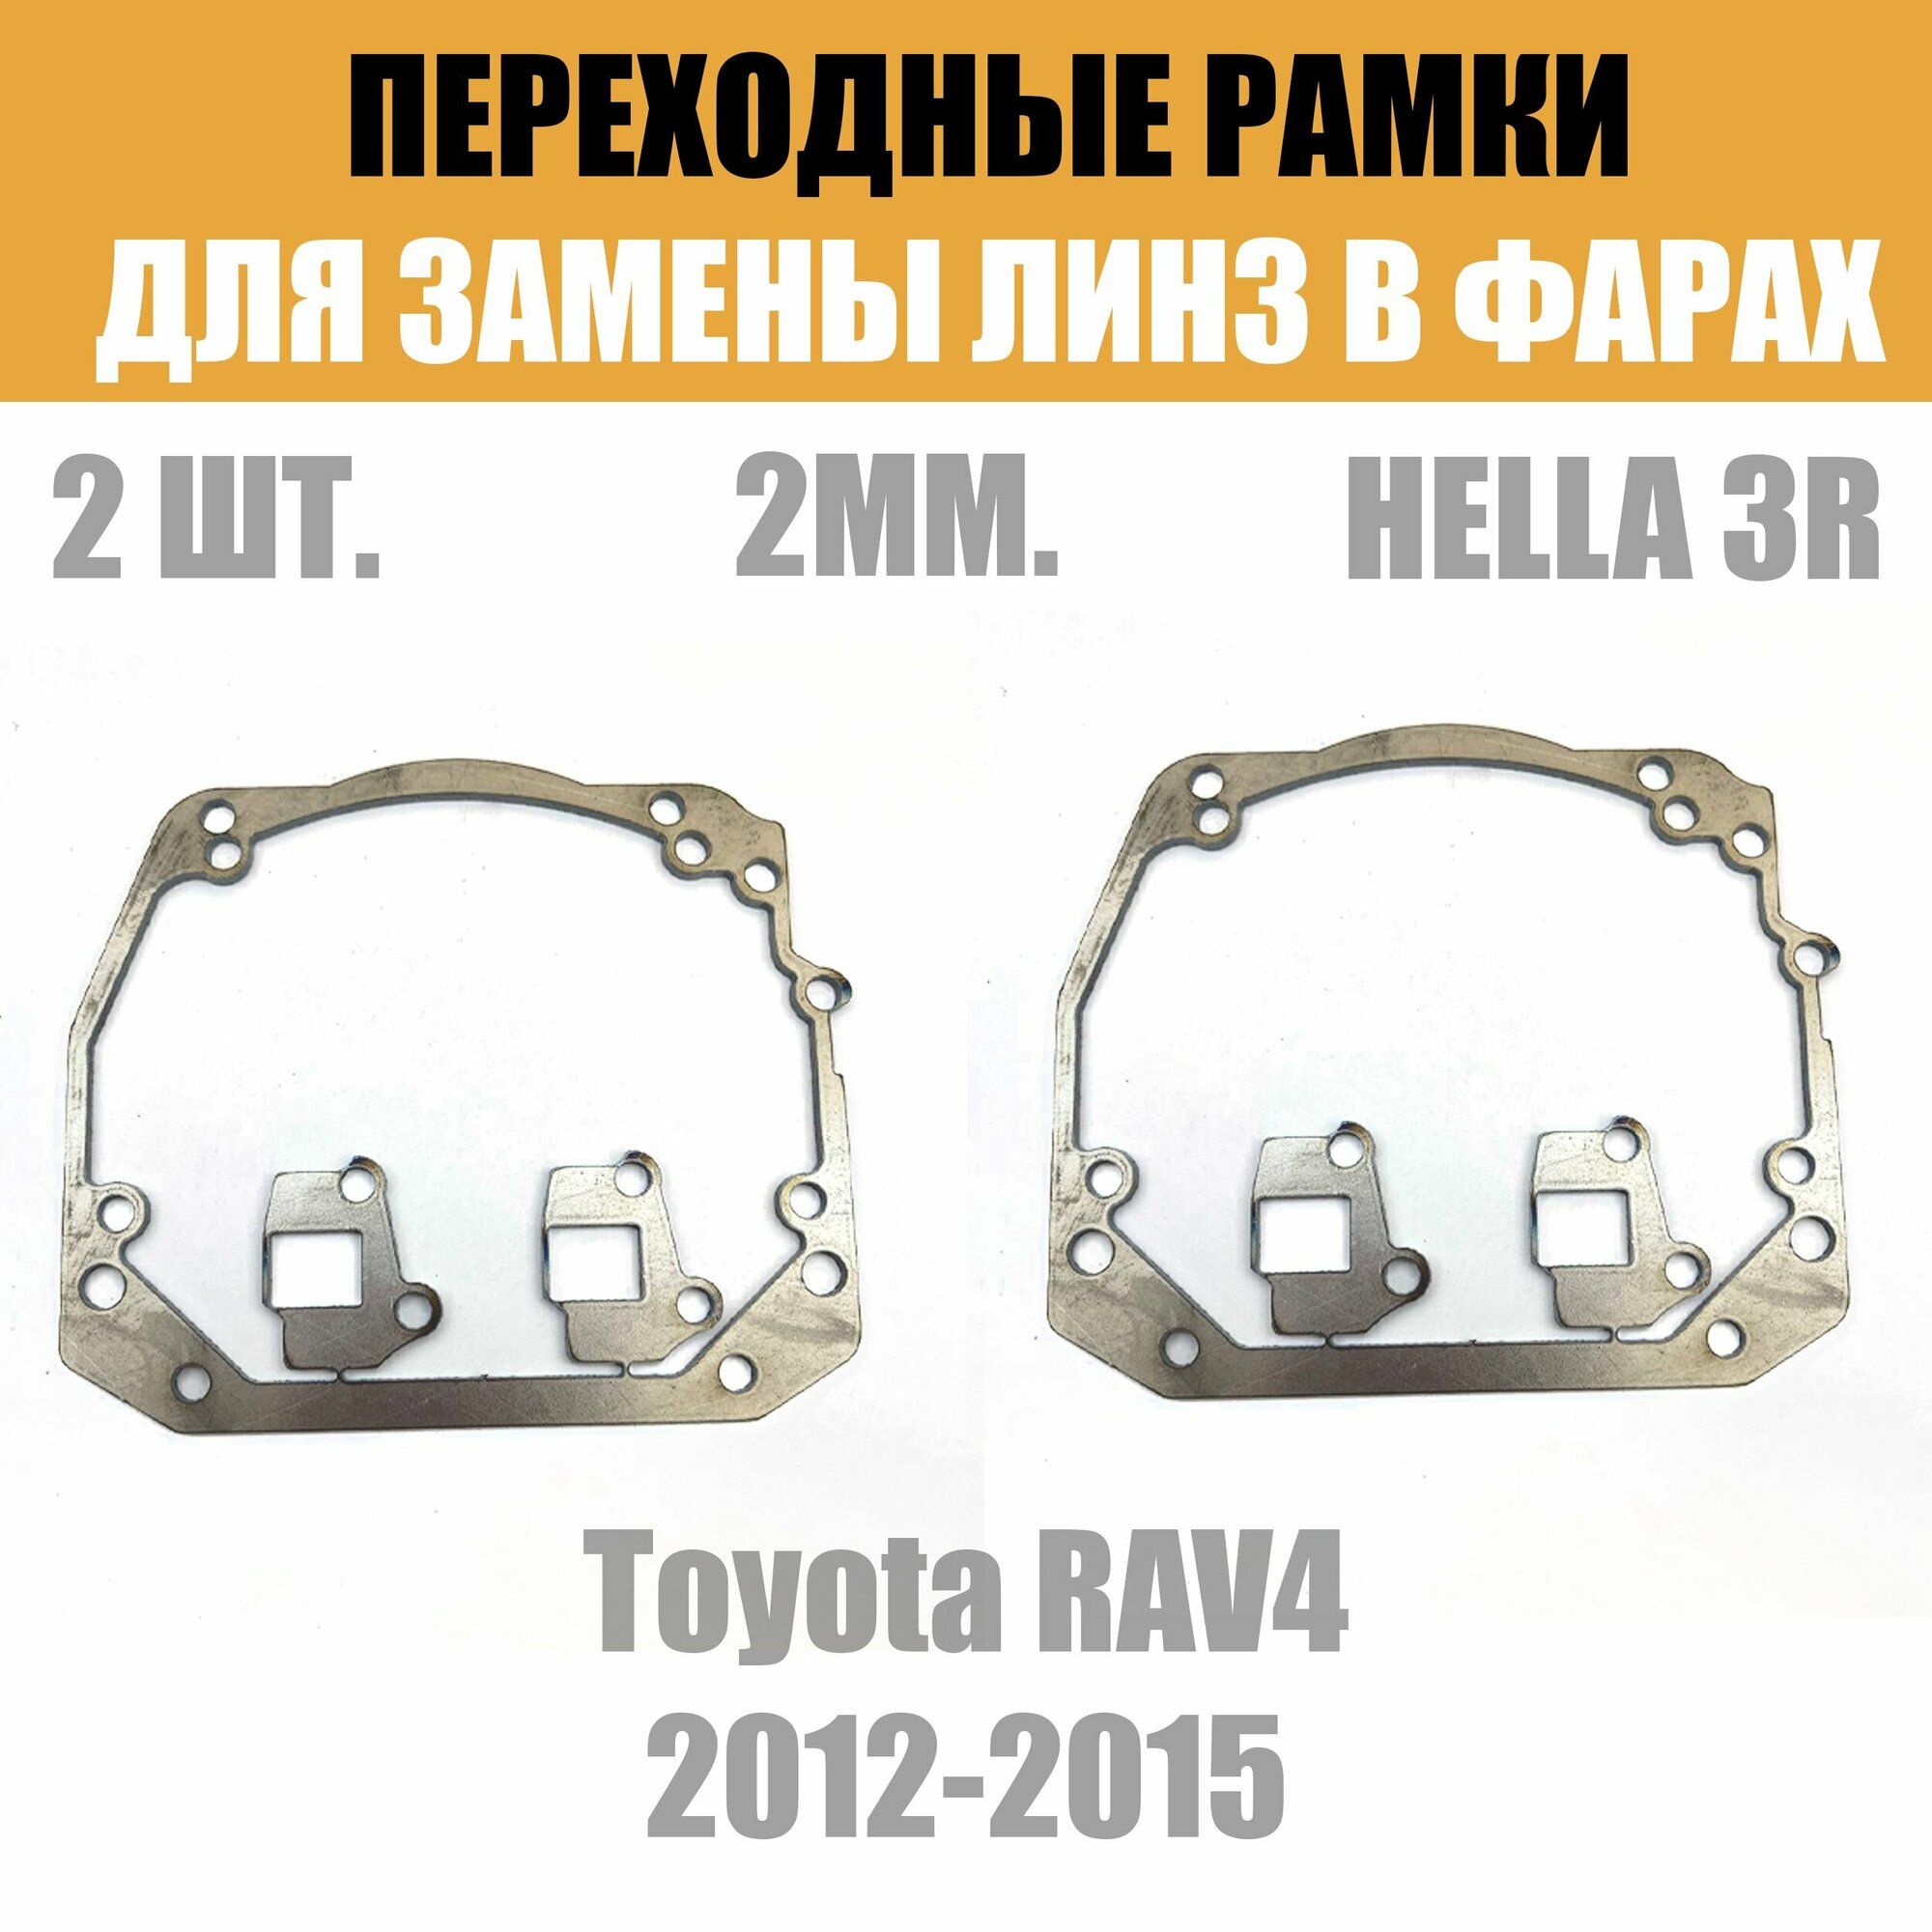 Переходные рамки для линз №46 на Toyota RAV4 2012-2015 под модуль Hella 3R/Hella 3 (Комплект, 2шт)